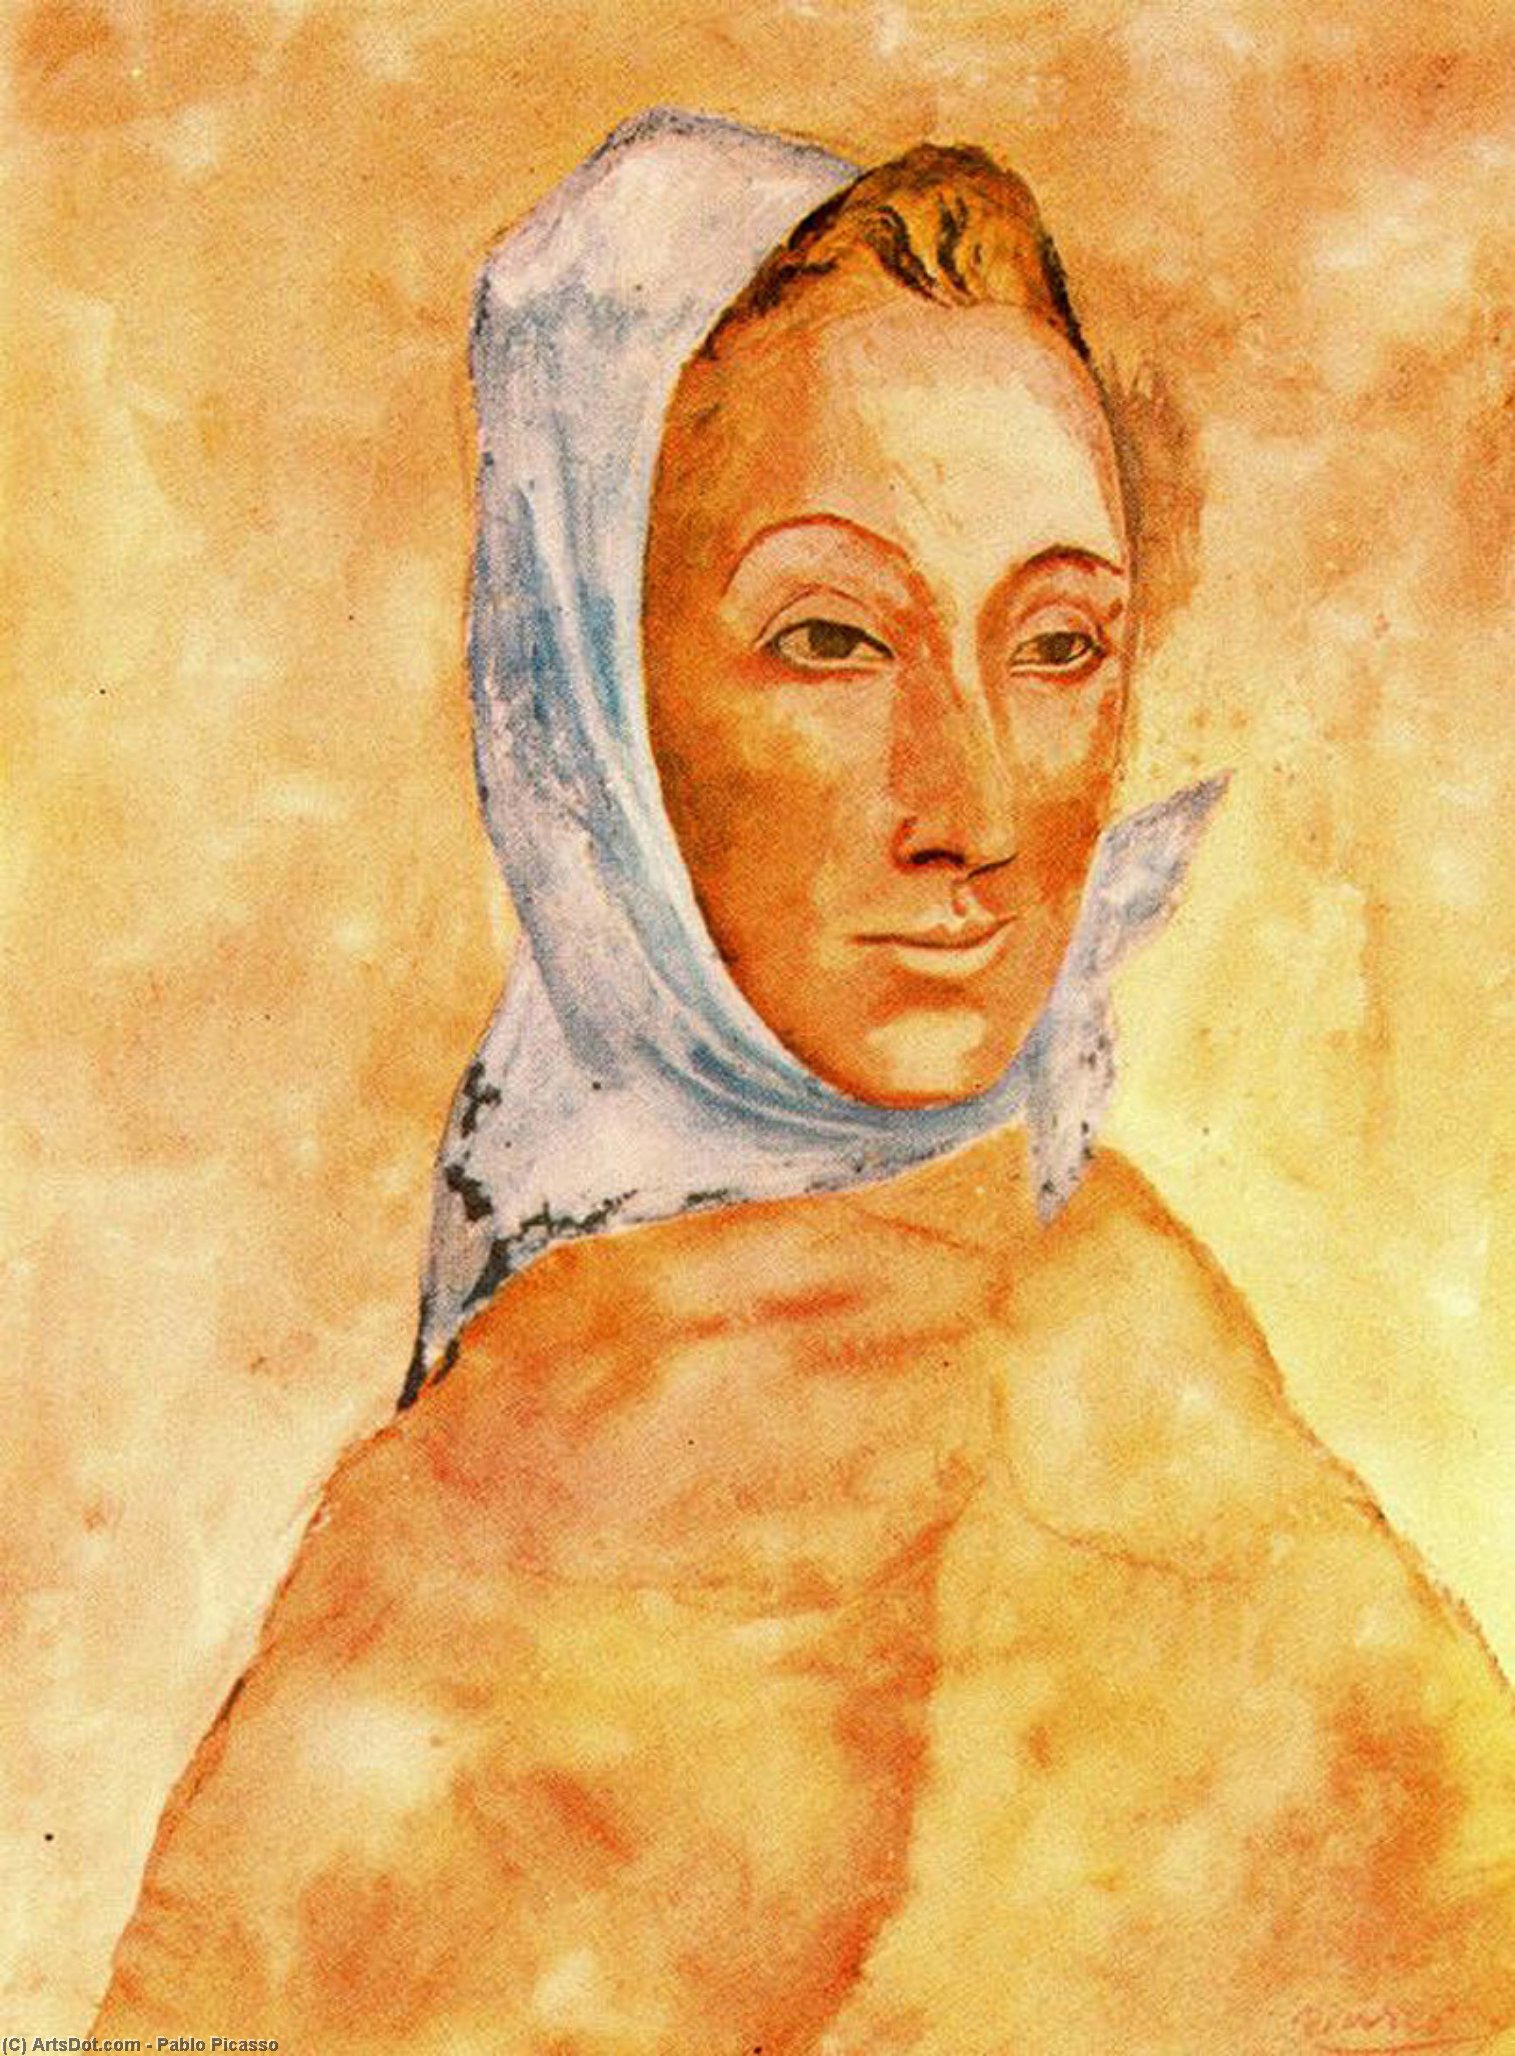 WikiOO.org - Εγκυκλοπαίδεια Καλών Τεχνών - Ζωγραφική, έργα τέχνης Pablo Picasso - Portrait of Fernande Olivier in headscarves